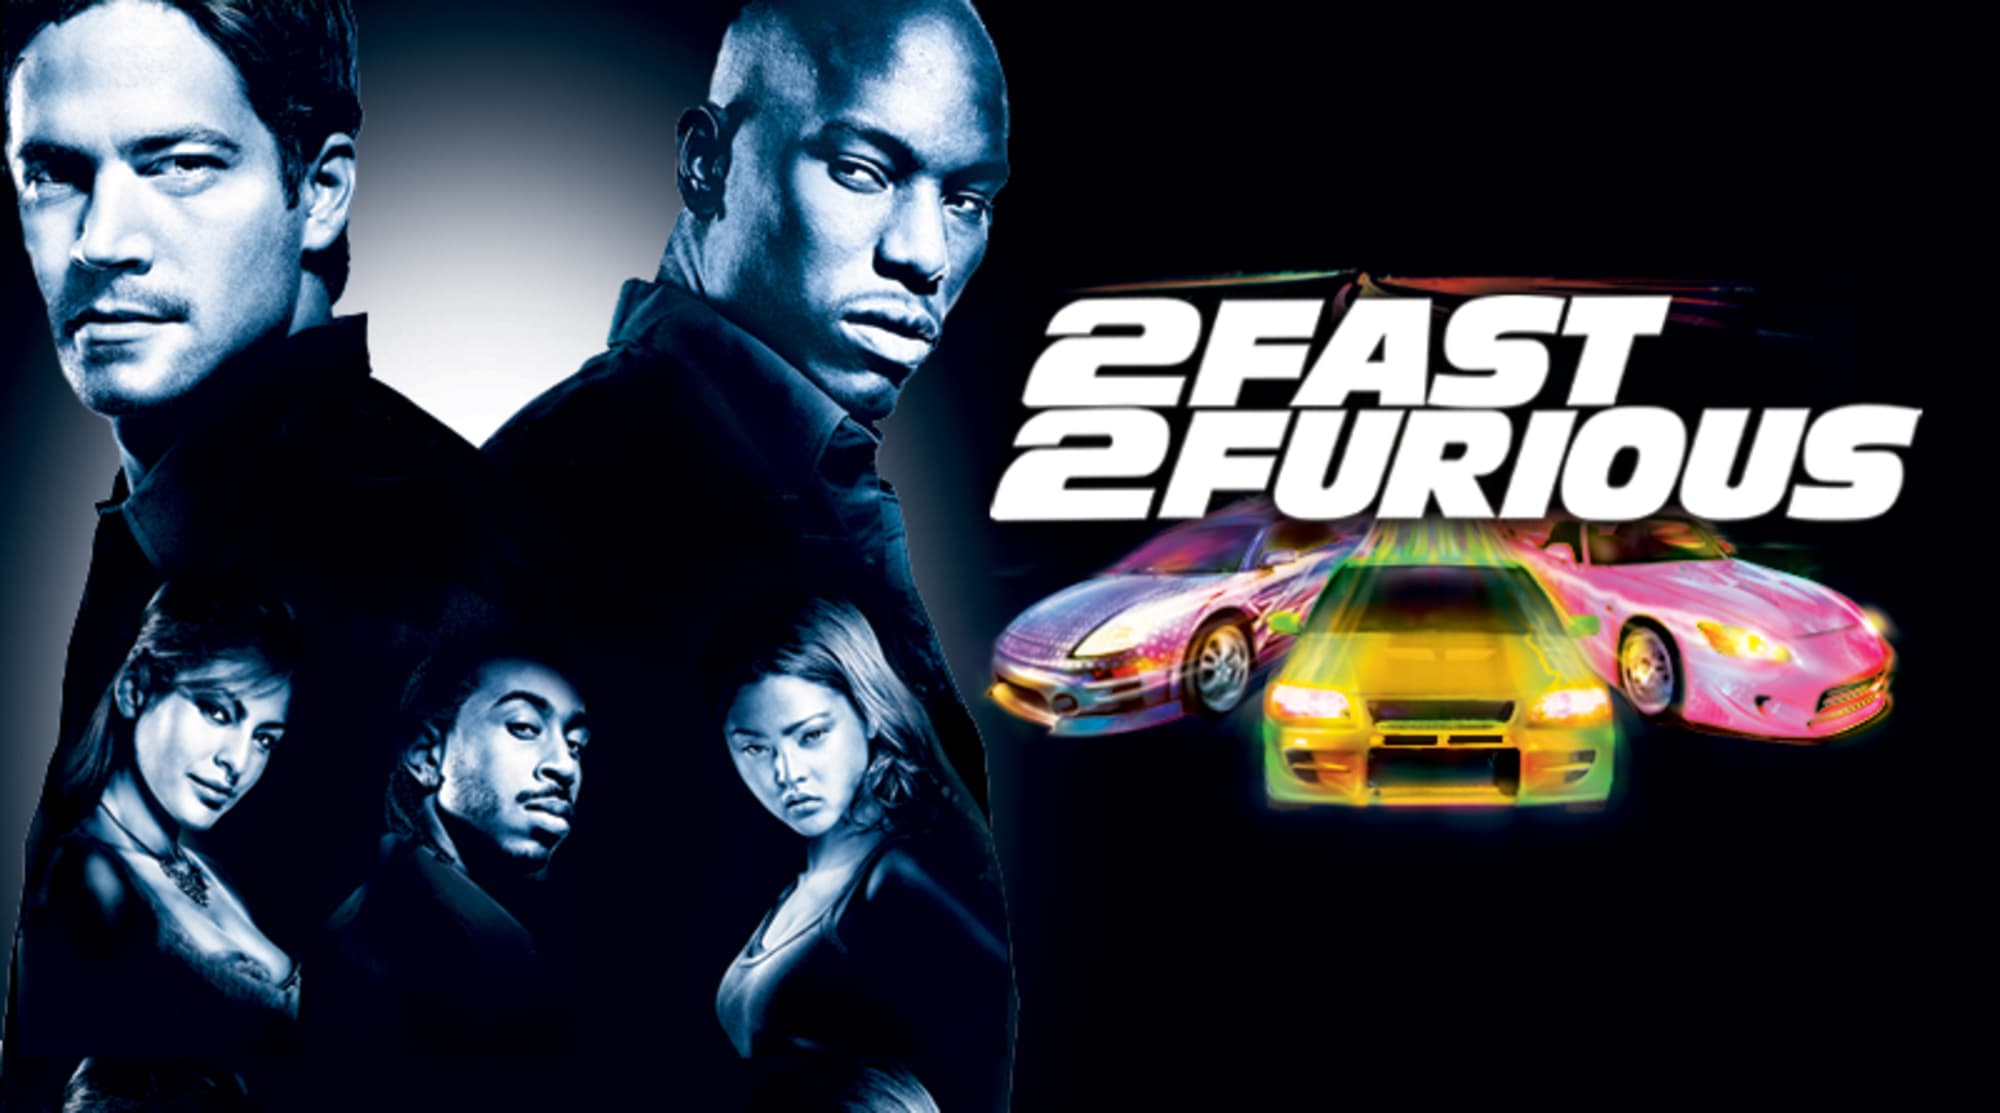 Форсаж на английском название. 2 Fast 2 Furious. Двойной Форсаж 2003 обложка. Двойной Форсаж Постер.